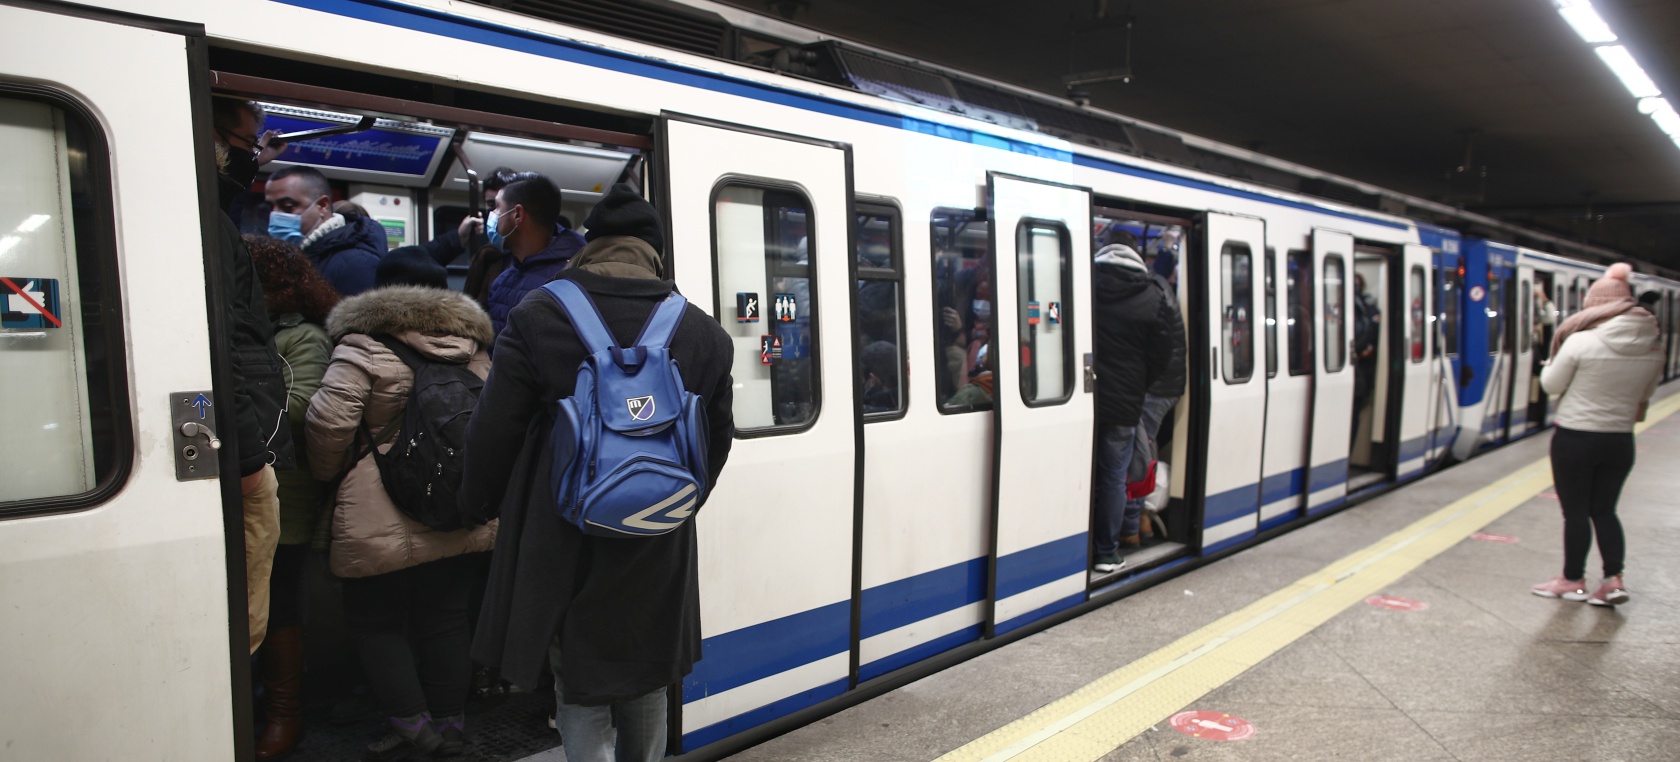 Metro de Madrid cambia el nombre de ‘Atocha-Renfe’ a ‘Atocha-Constitución del 78’: ¿por qué?